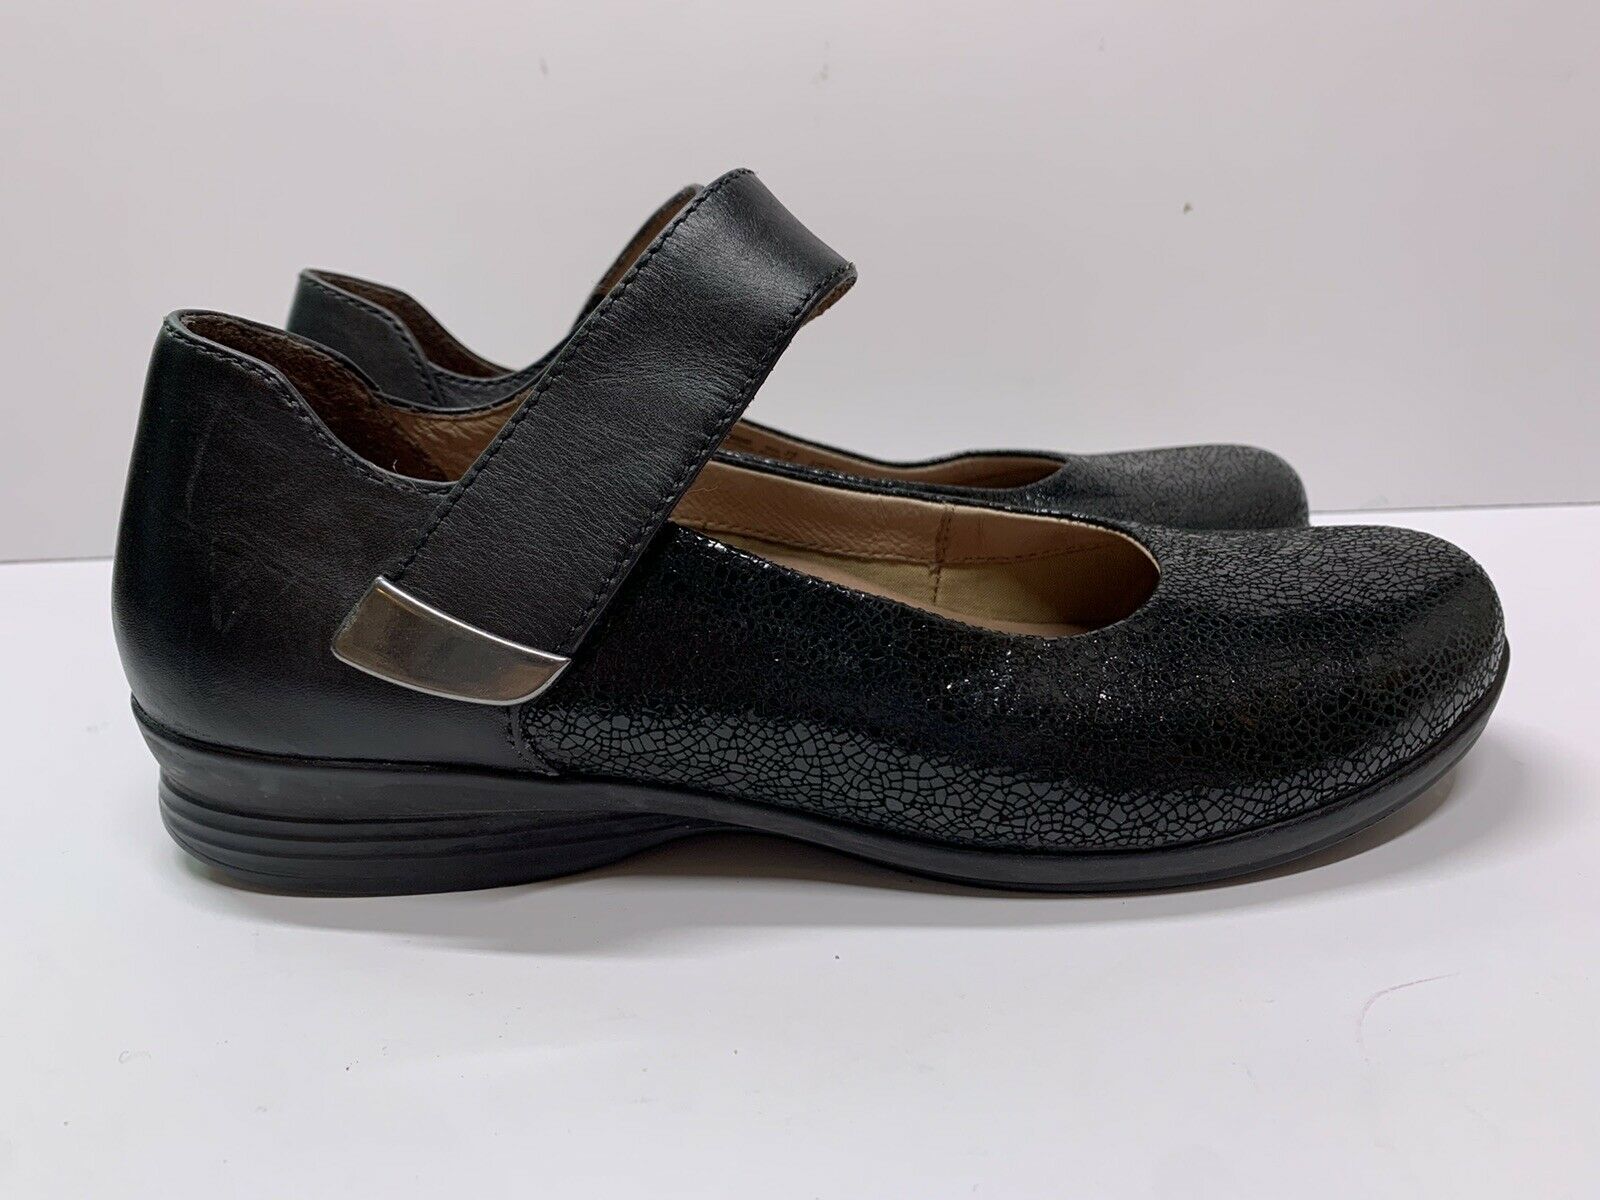 Dansko Audrey Mary Jane Shoes Leather 39 8.5/9 Black Crackled Comfort